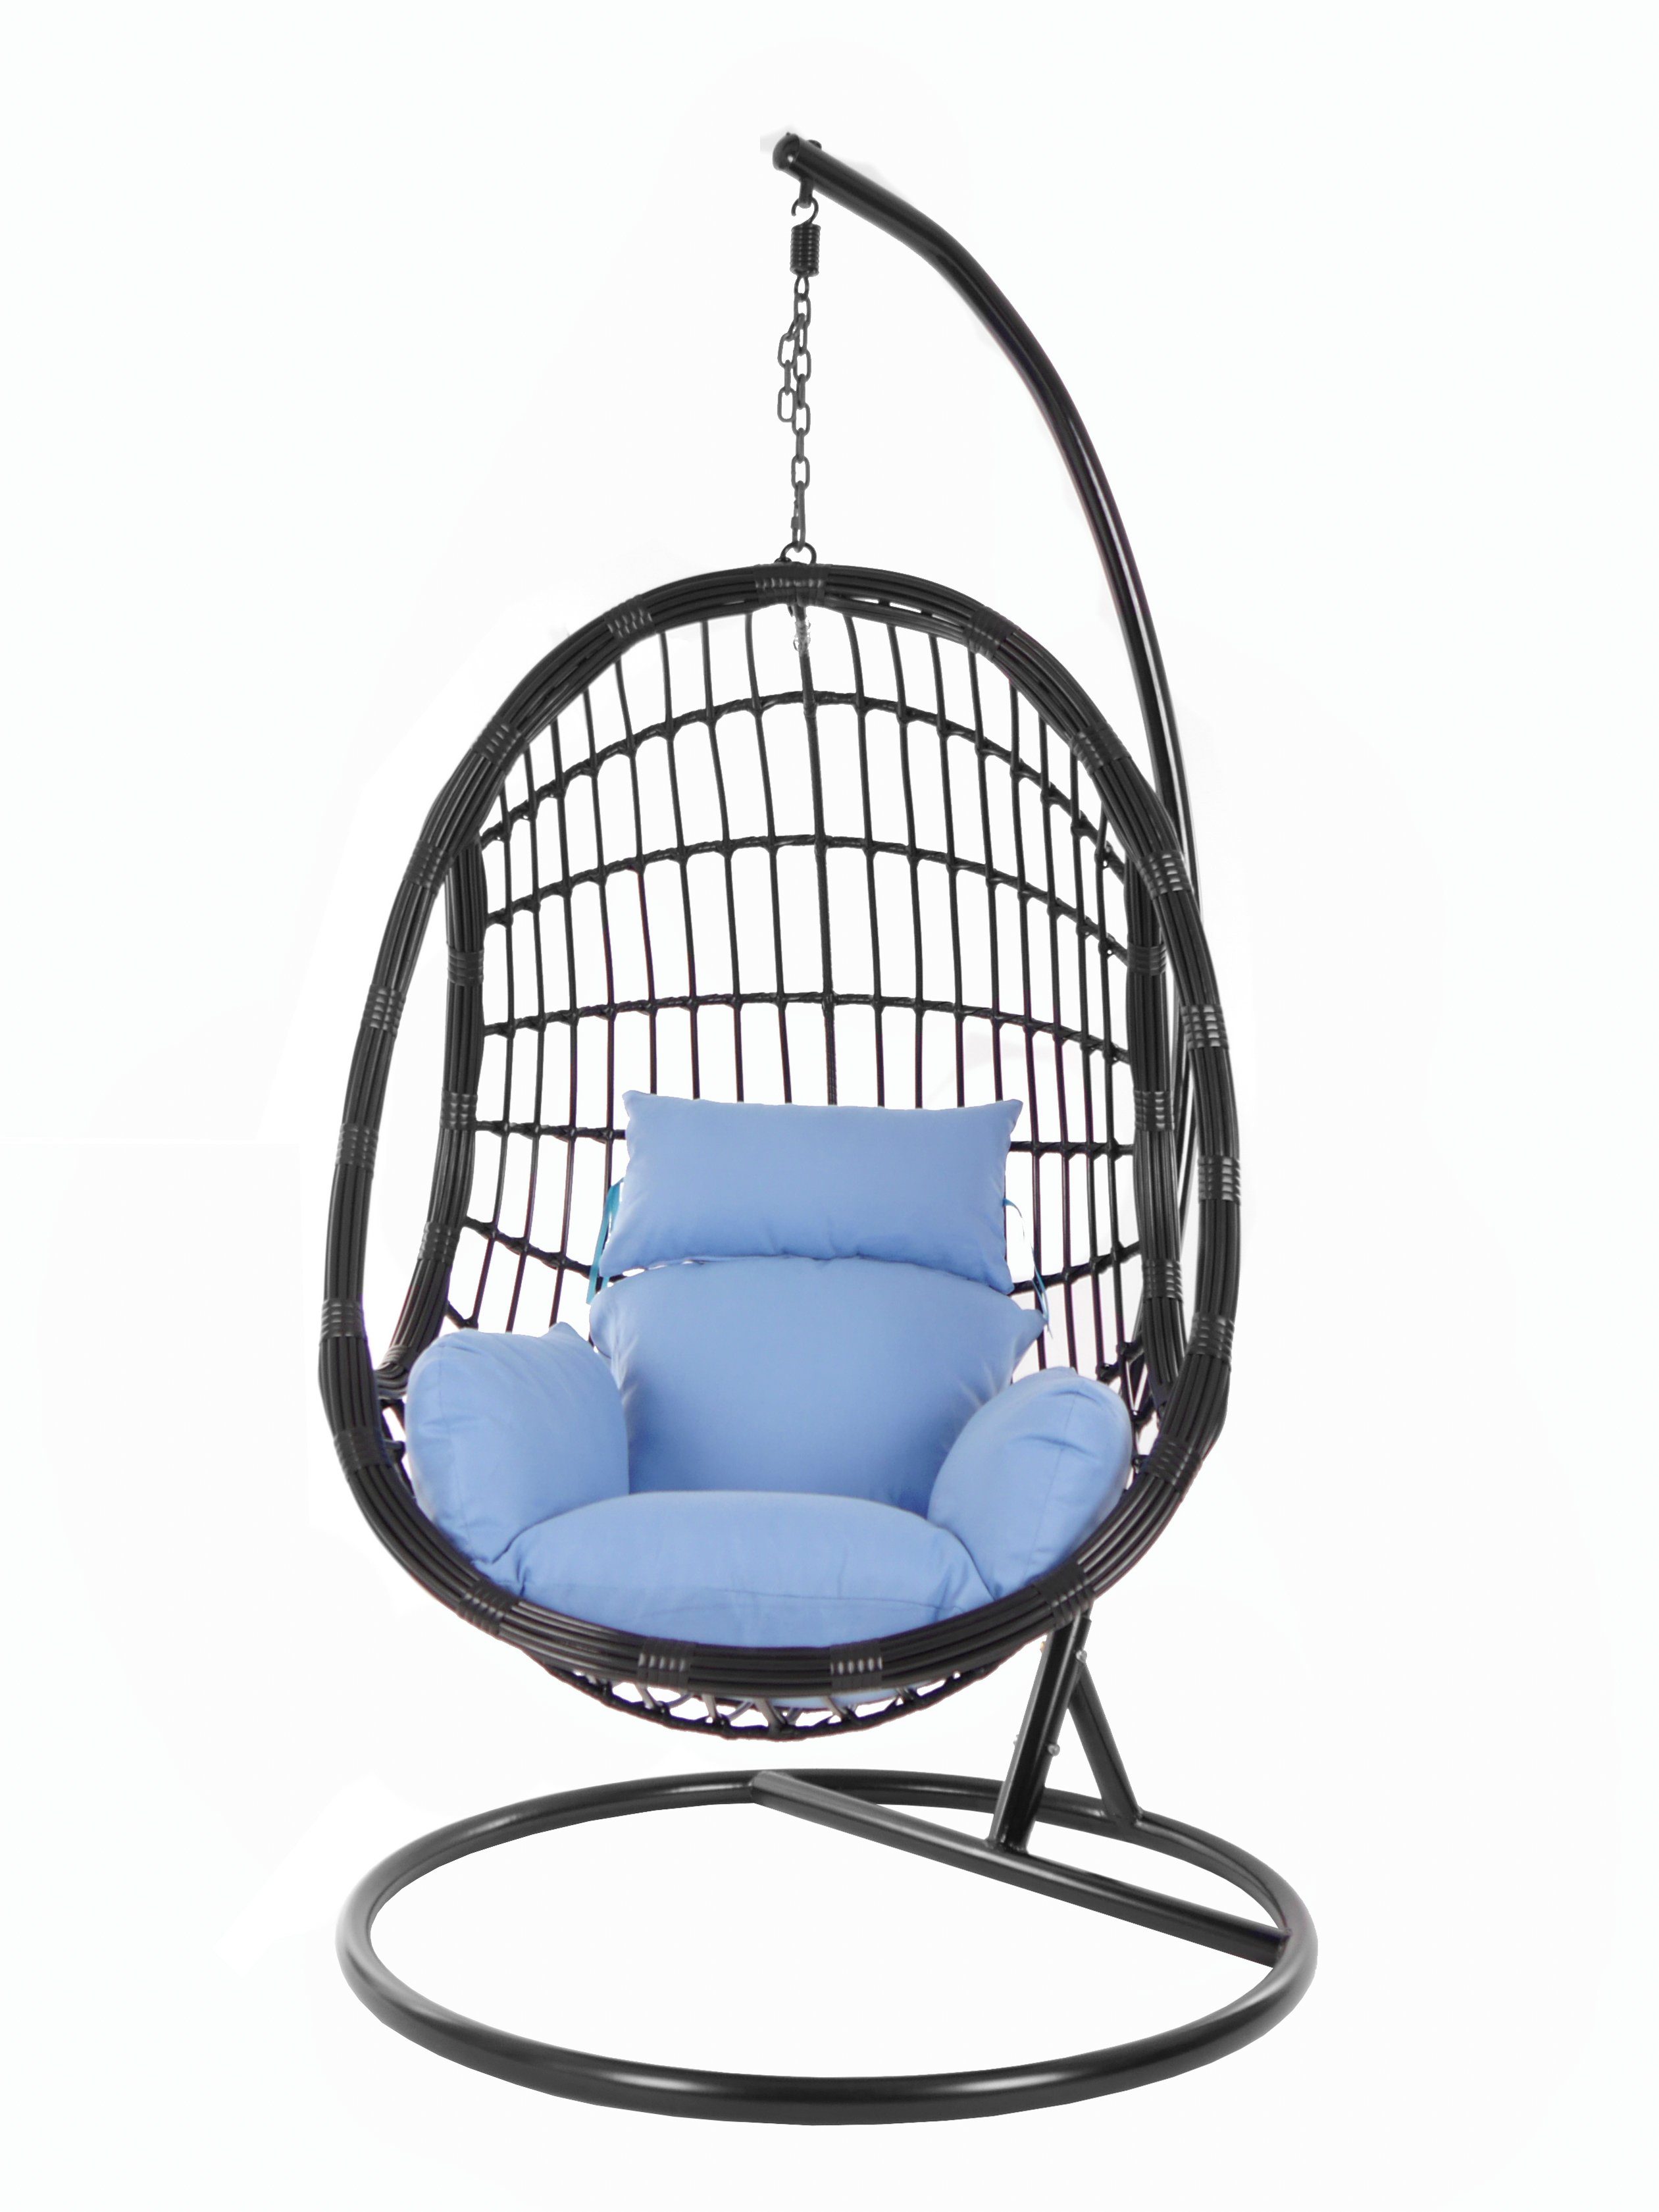 KIDEO Hängesessel PALMANOVA black, Schwebesessel, (3070 Swing blue) mit Chair, royal und Kissen, Hängesessel Nest-Kissen königsblau Gestell